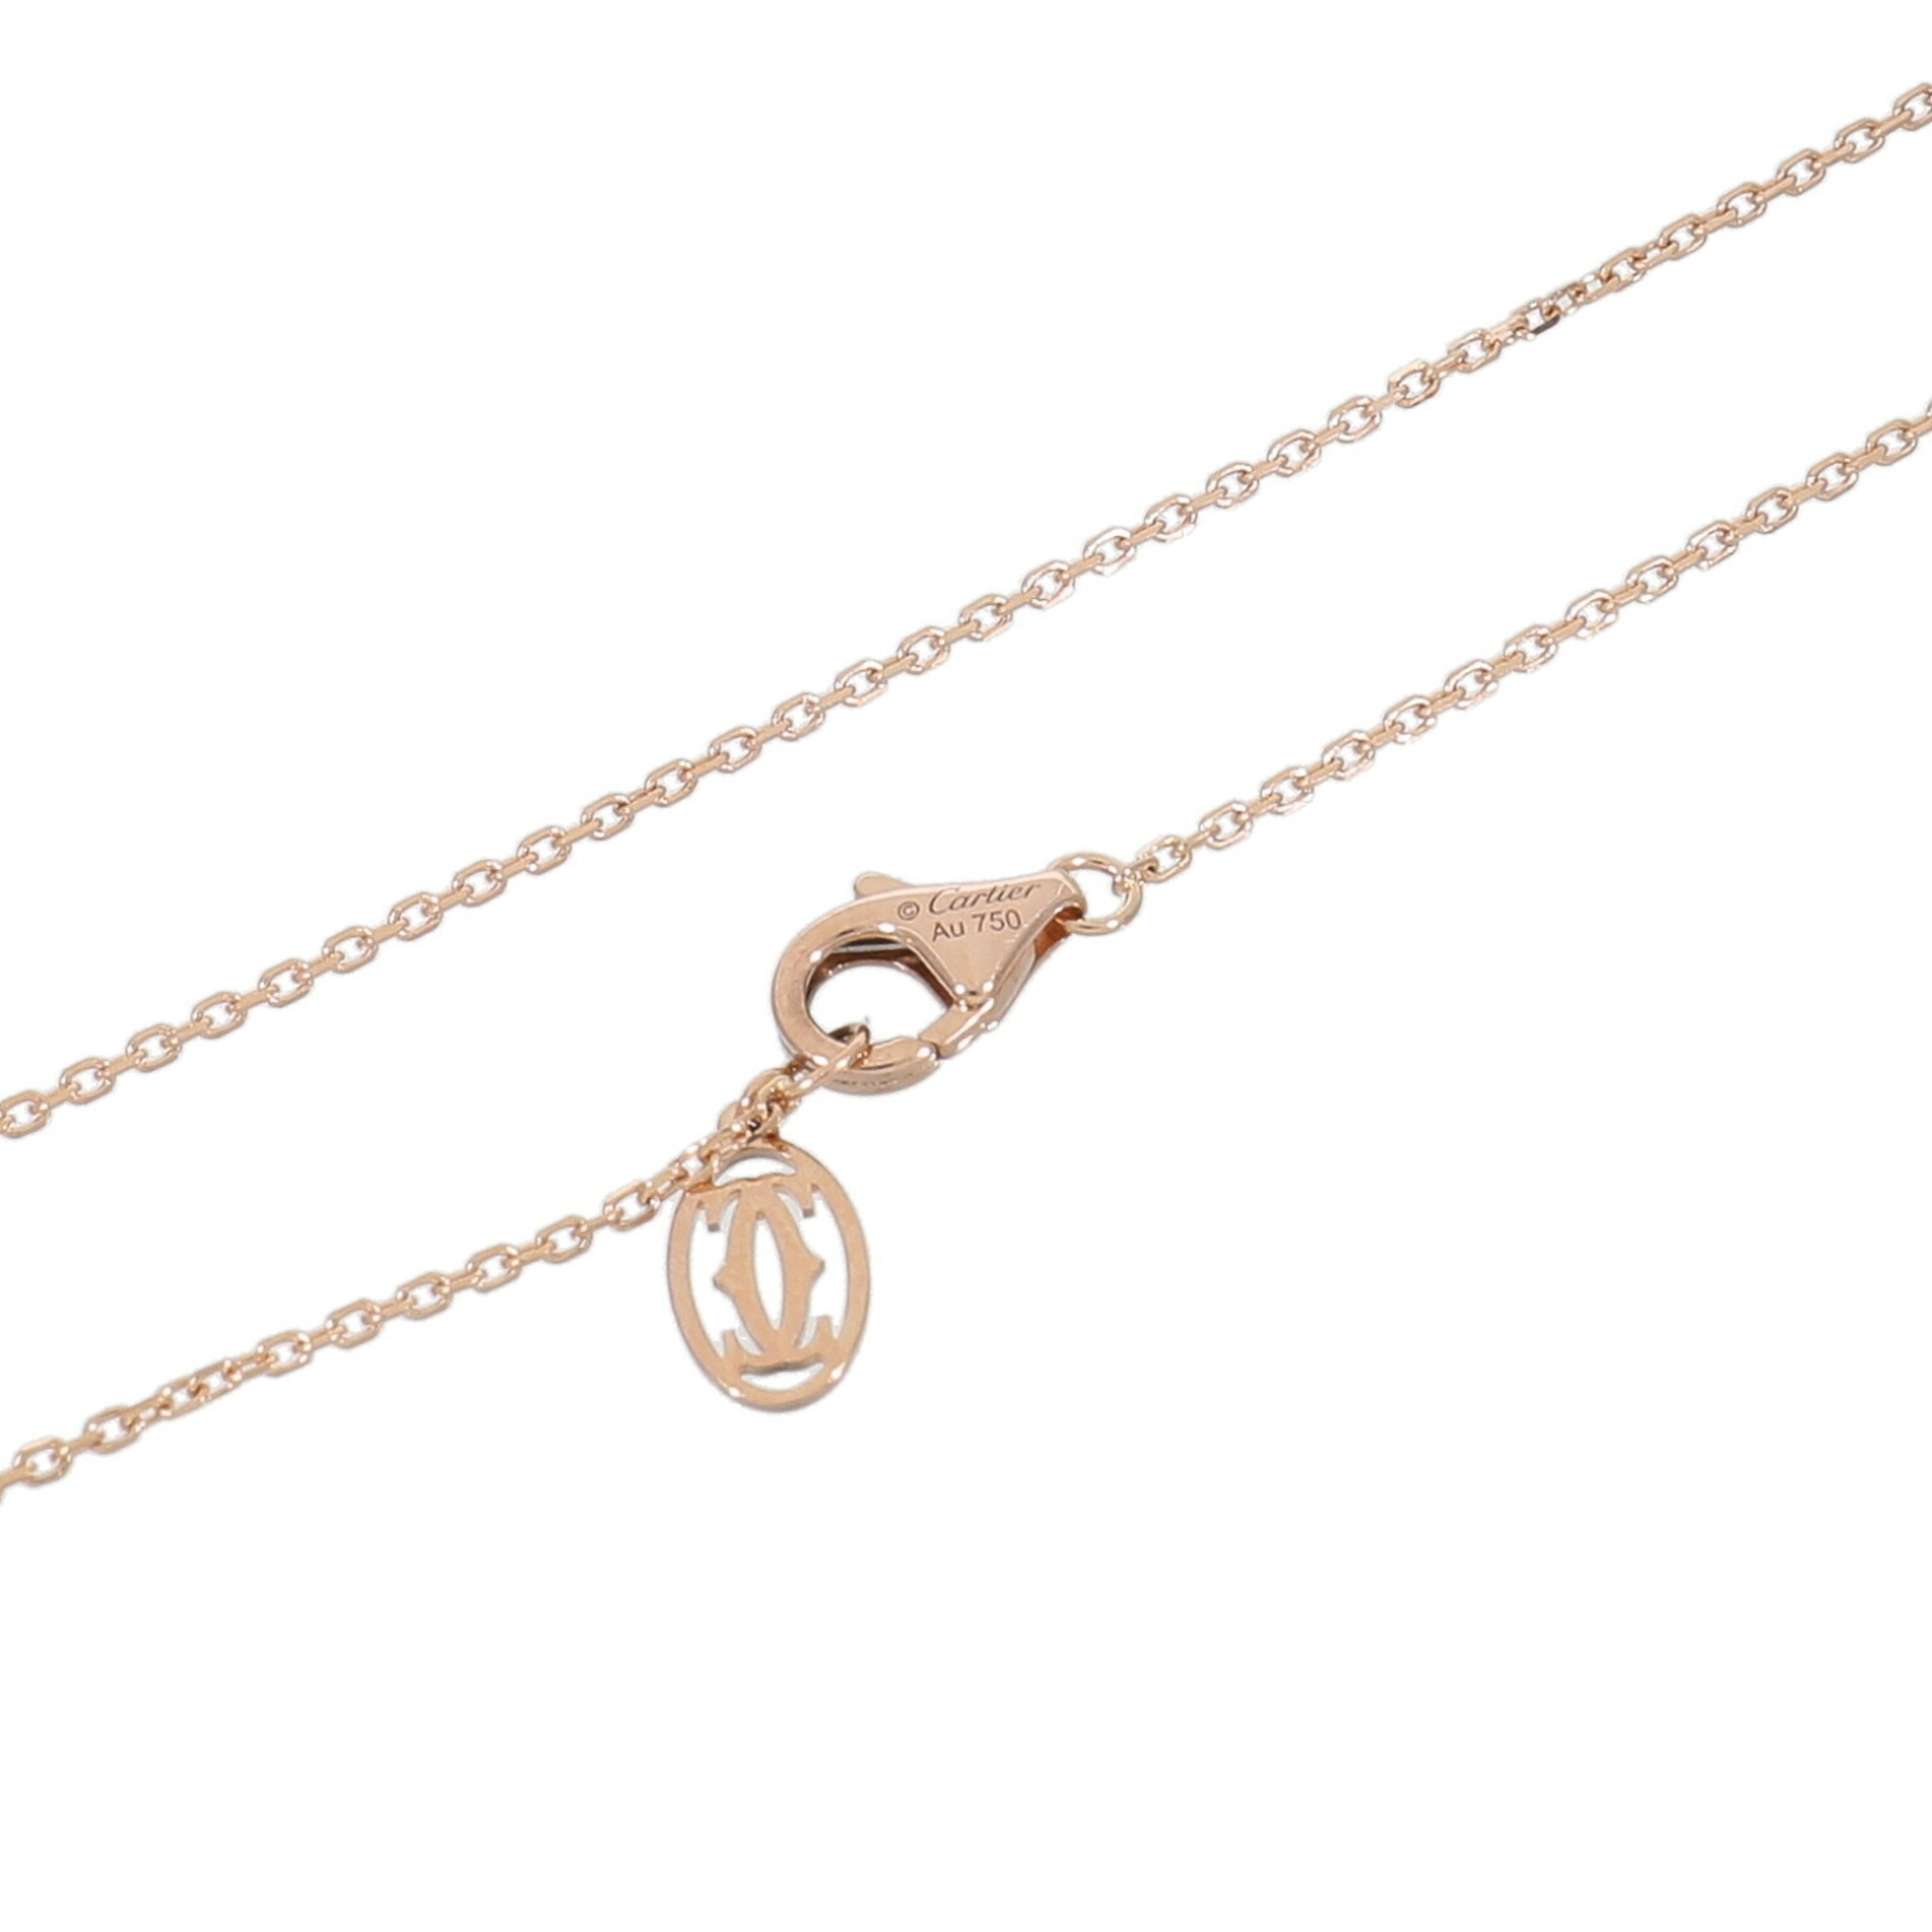 Cartier C de necklace for women